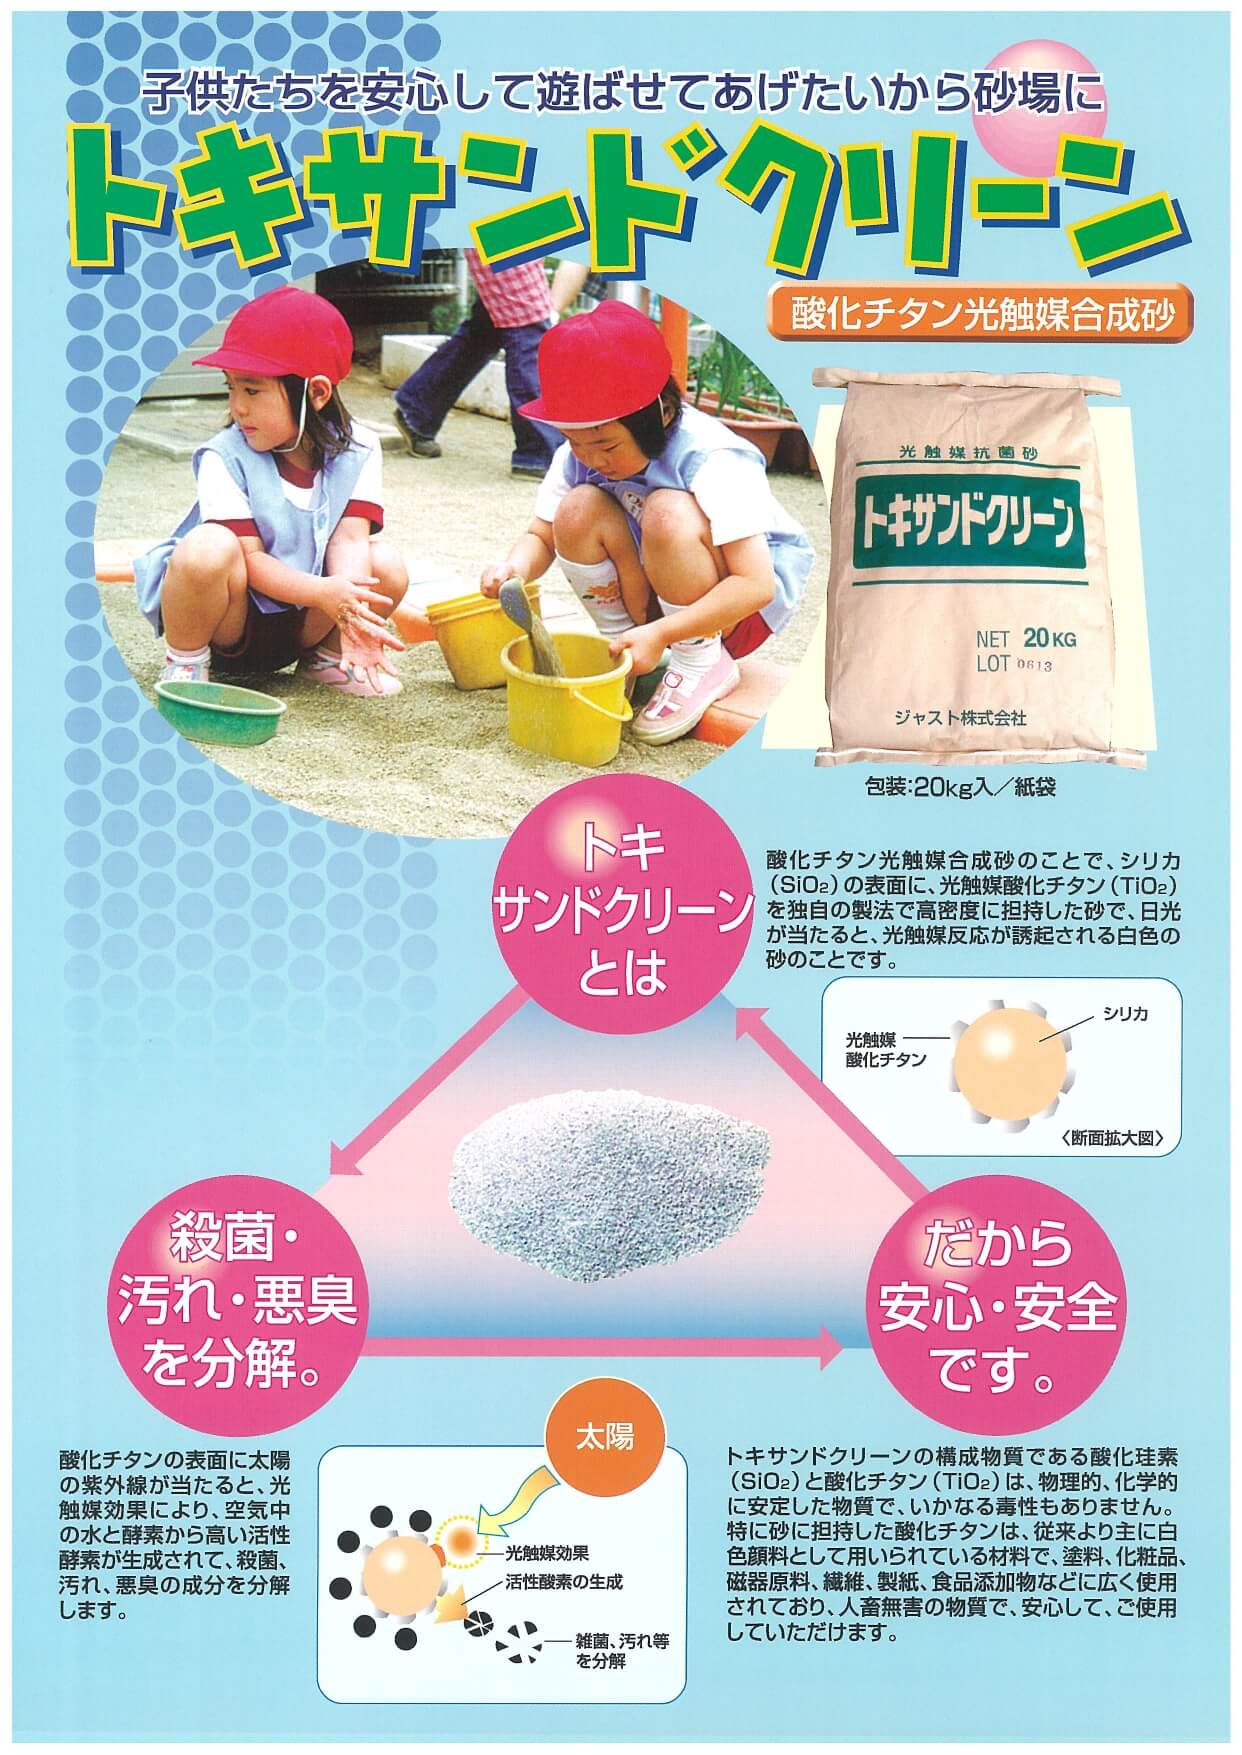 トキサンドクリーンは酸化チタン光触媒合成砂です。